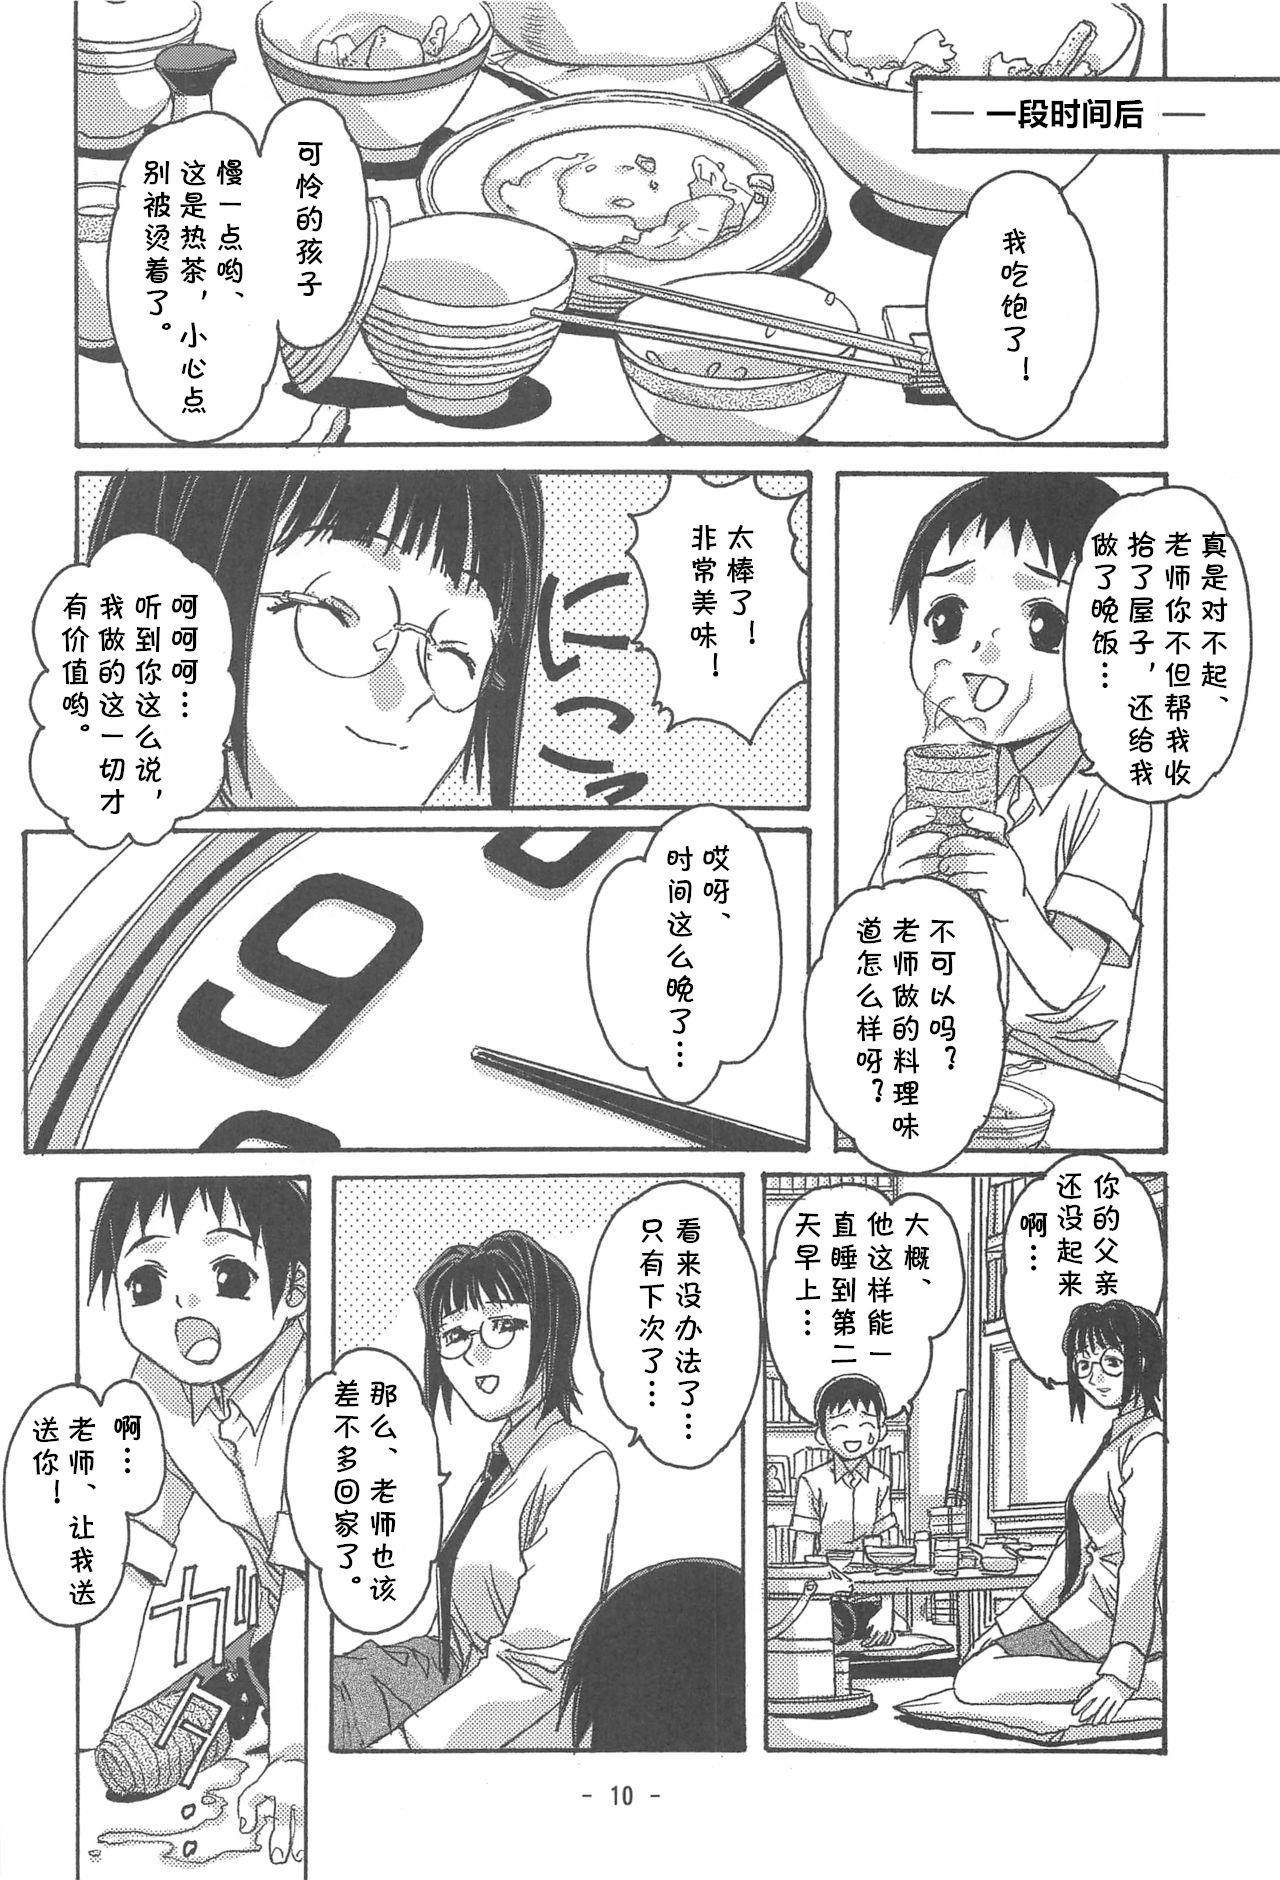 Gros Seins Otonano Do-wa Vol. 16 - Original Top - Page 7